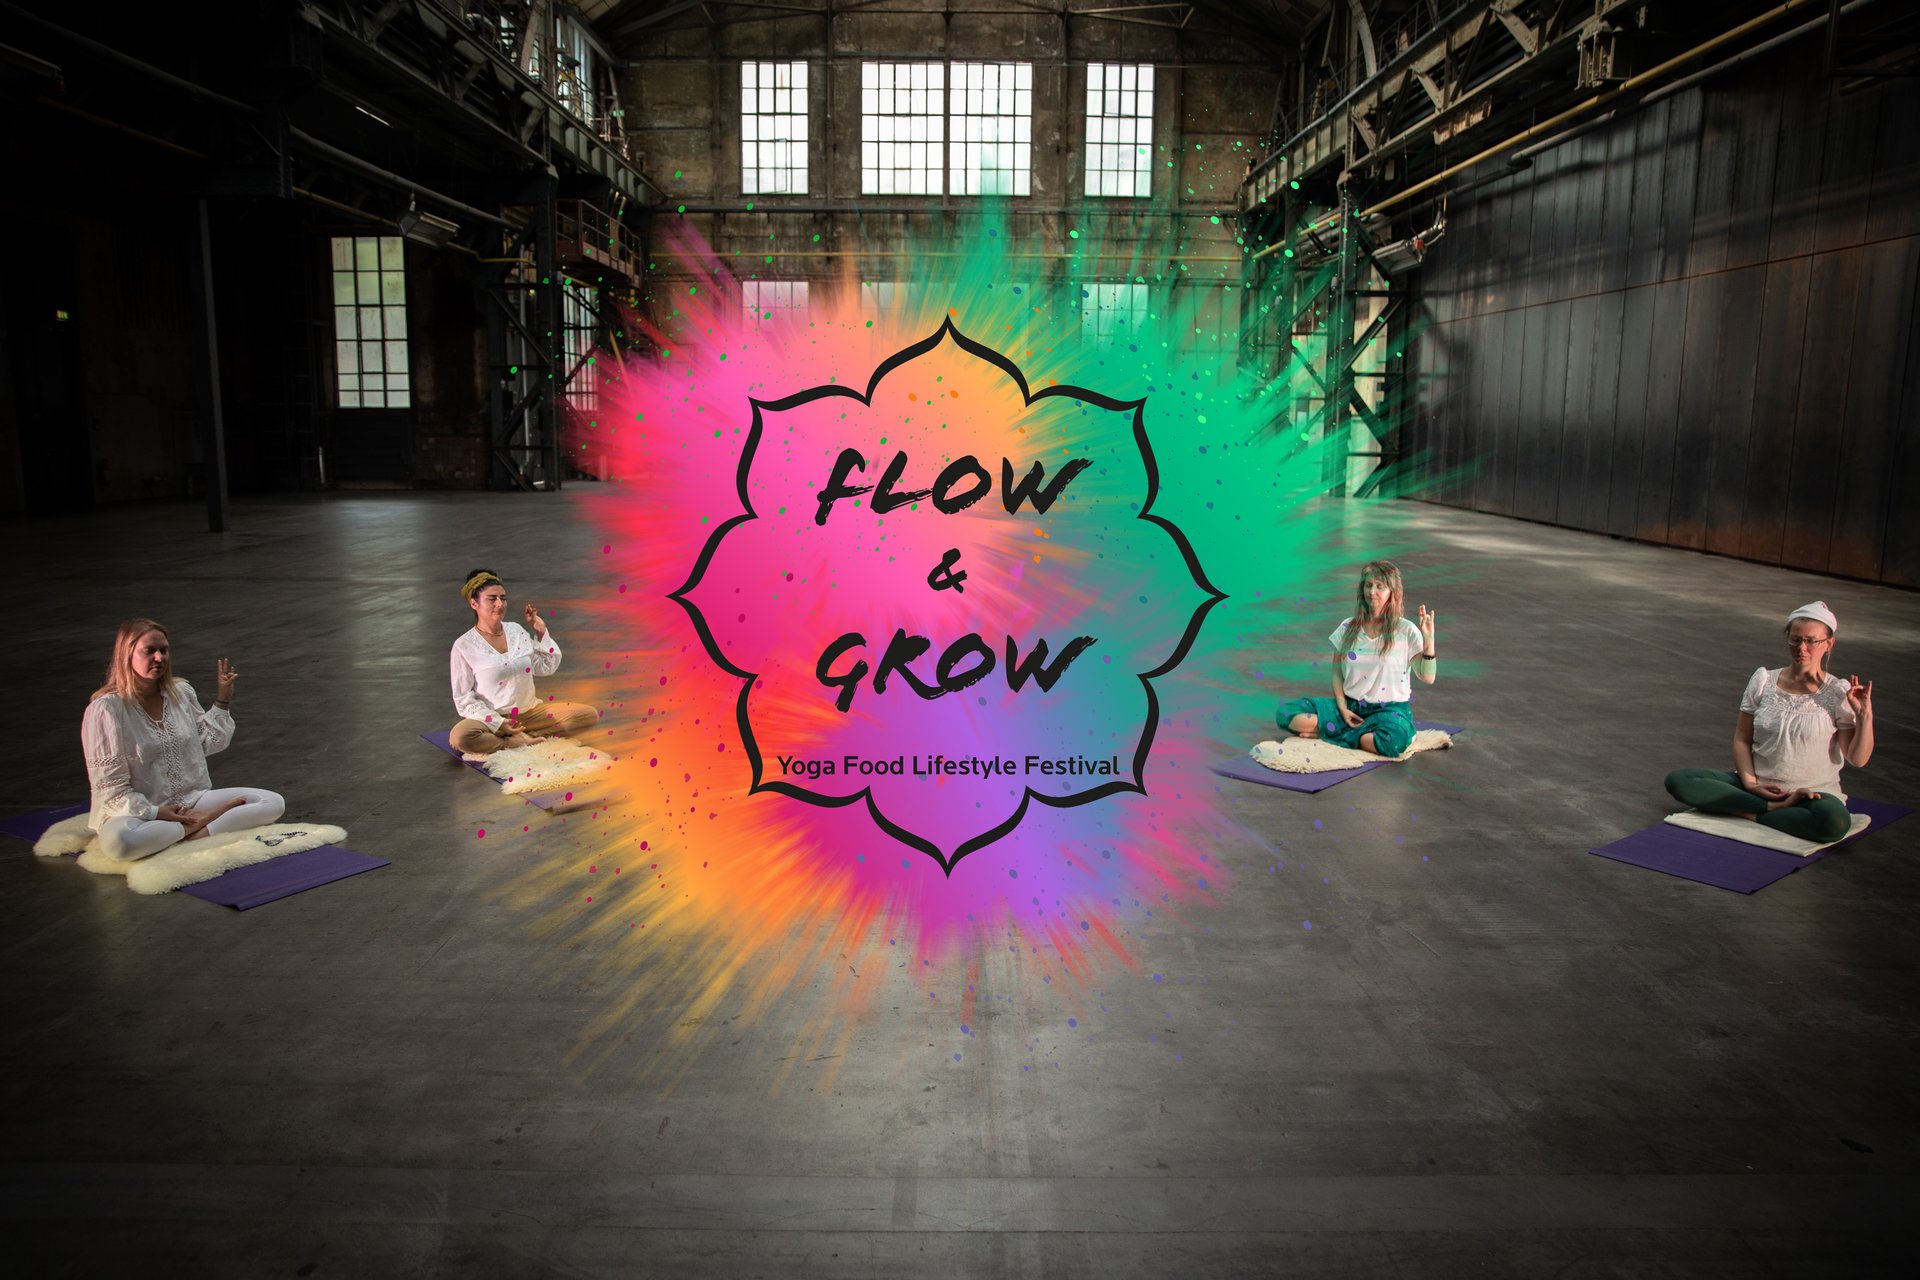 Menschen praktizieren Yoga in der Halle 1 der Jahrhunderthalle Bochum. Im Vordergrund ist das Farbsplash-Logo Flow & Grow zu sehen.